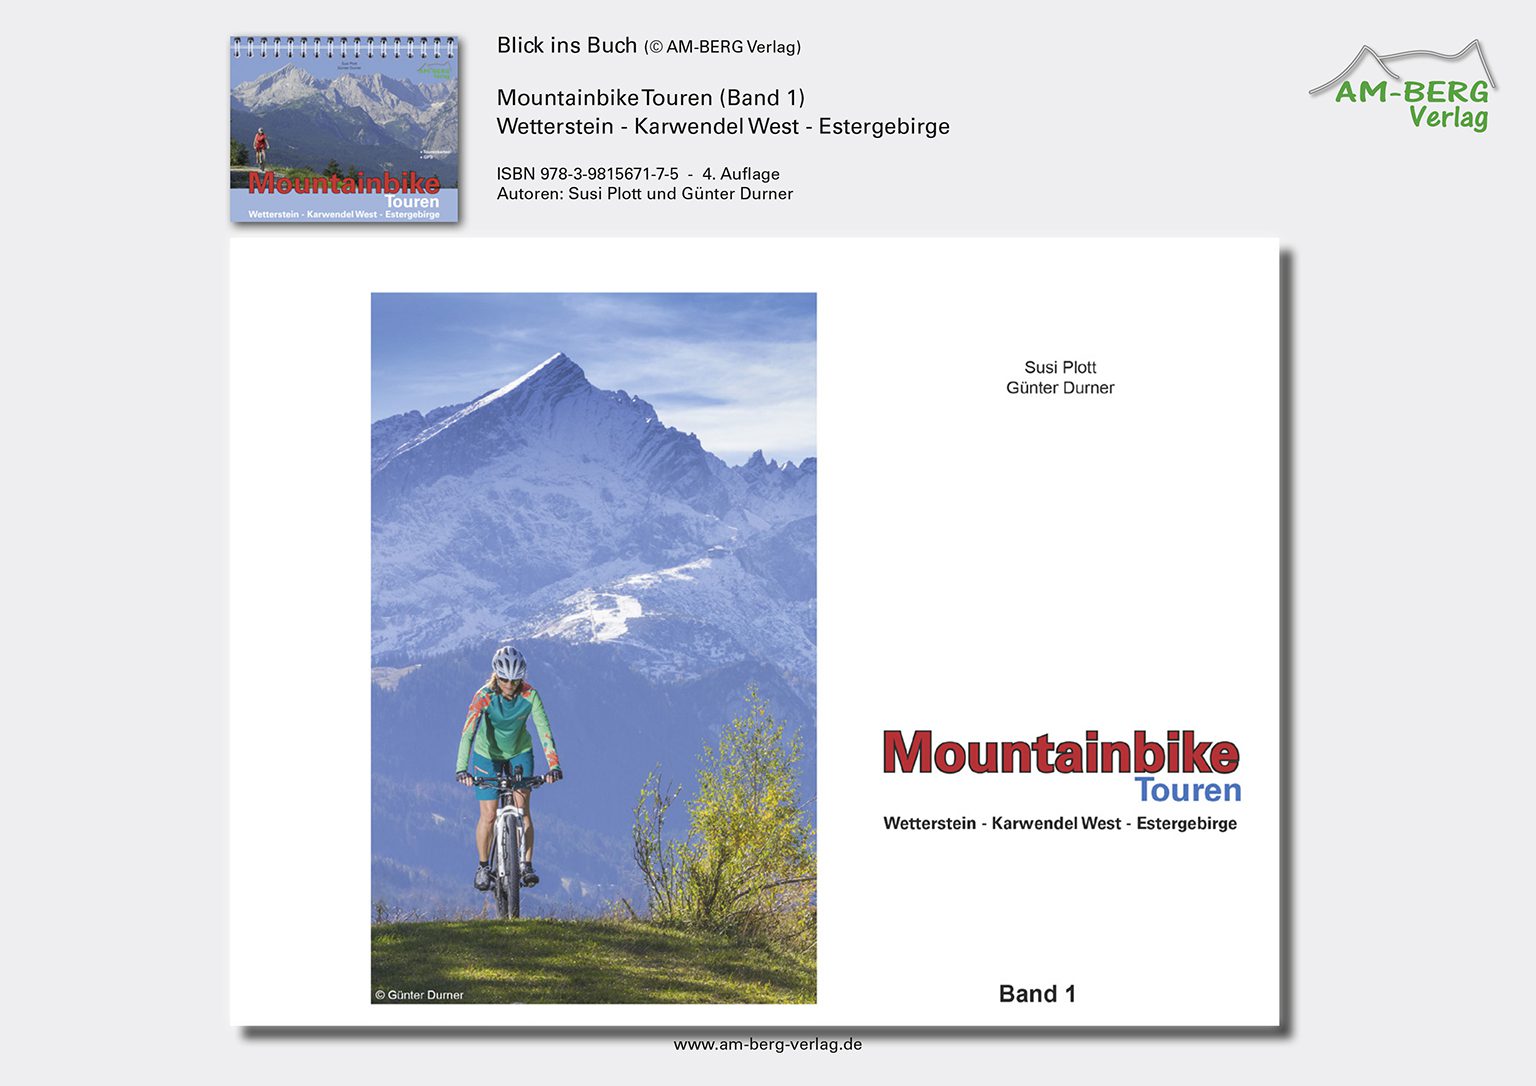 Mountainbike Touren Wetterstein-Karwendel-West-Estergebirge_band1_BlickinsBuch01